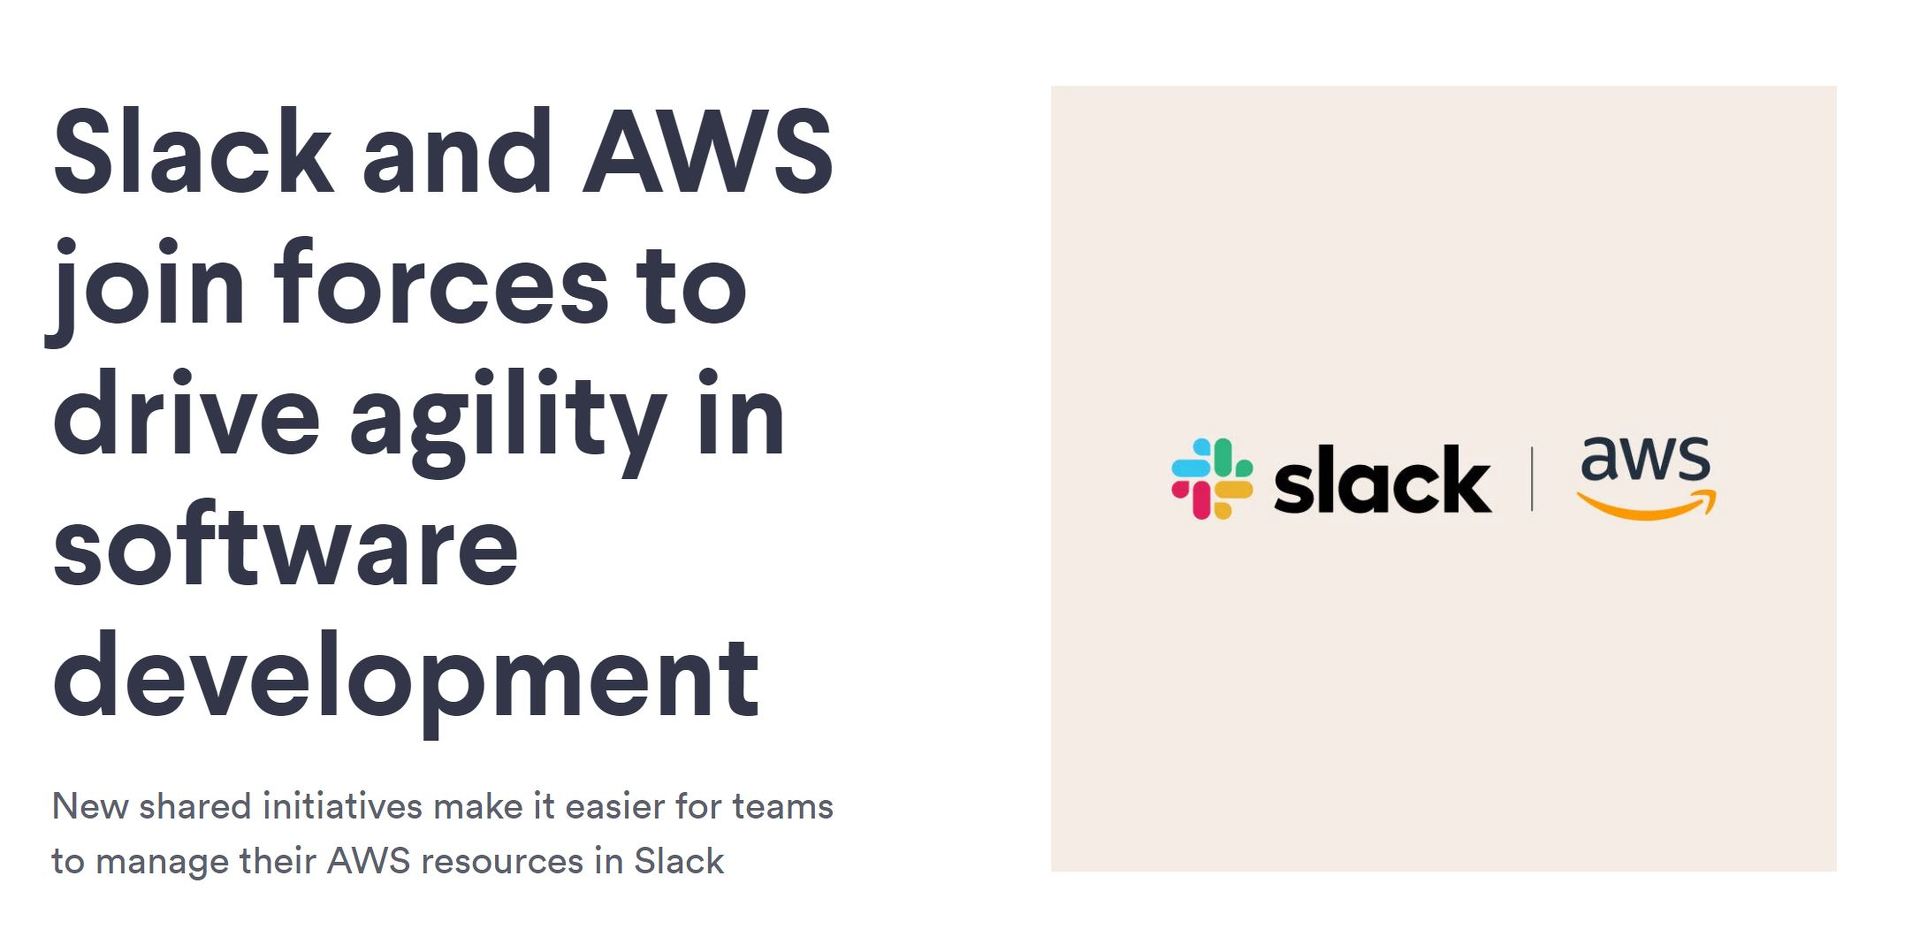 【IT】AWSとSlack、戦略的提携を発表　SlackはAmazon Chimeを採用し、AWSは全社でSlackを採用